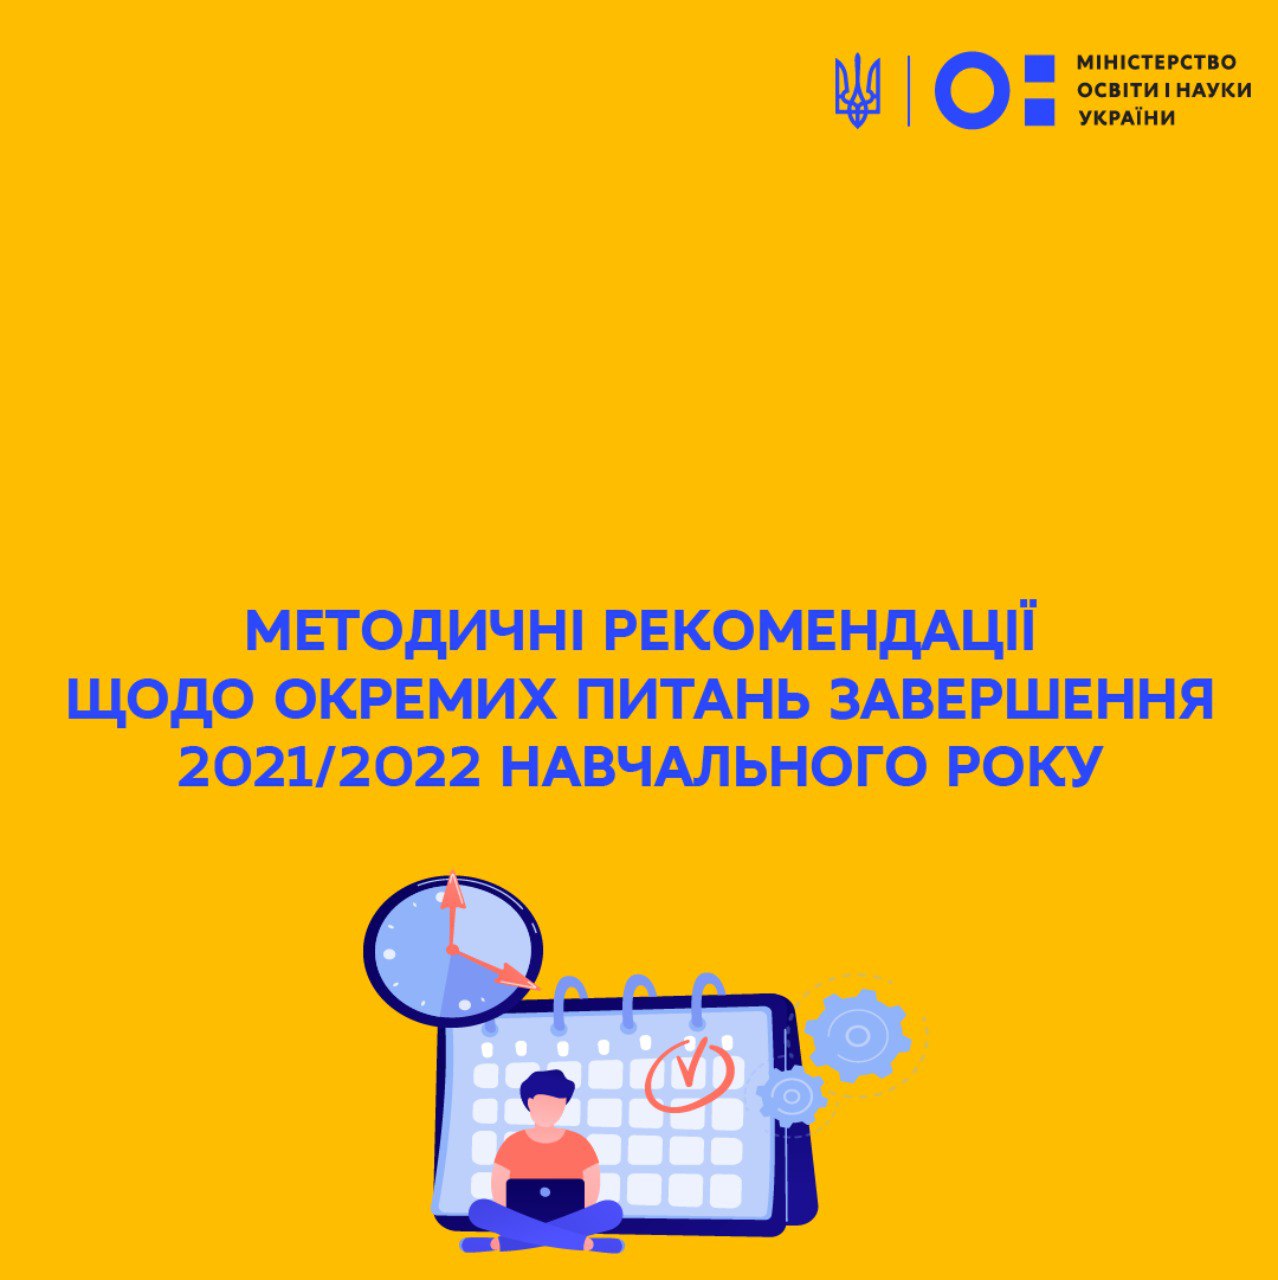 Сергій Шкарлет: Методичні рекомендації щодо окремих питань завершення 2021/2022 навчального року | Міністерство освіти і науки України